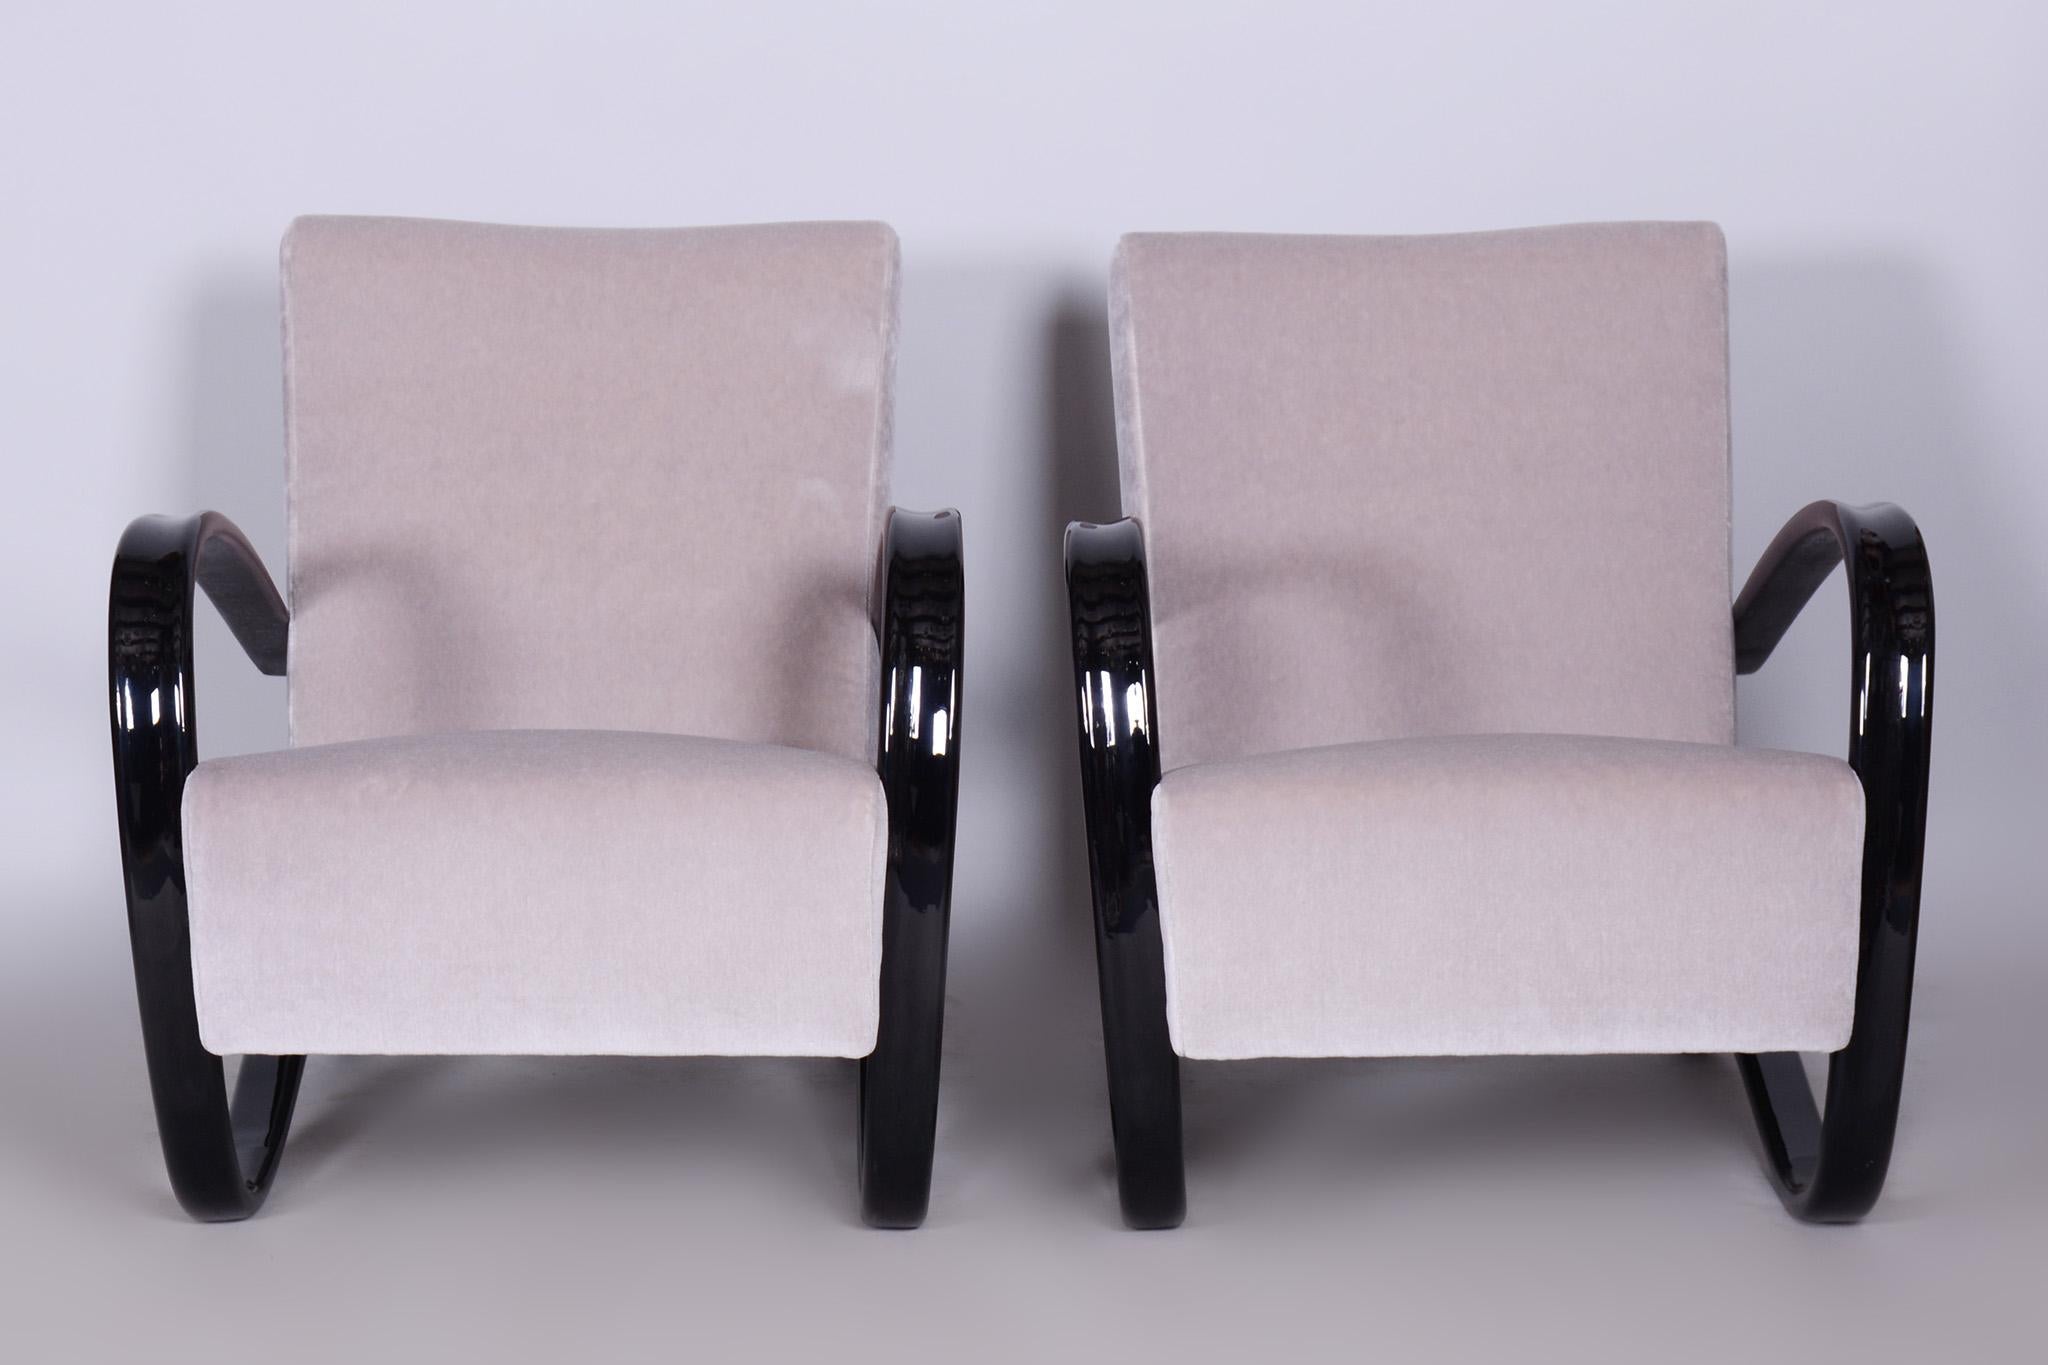 Paire de fauteuils H-269 conçus par Halabala pour UP Zavody, un fabricant et revendeur de meubles bien connu basé à Brno, en Tchécoslovaquie. 

Ces dernières années, ces chaises sont devenues de plus en plus rares et la demande des décorateurs